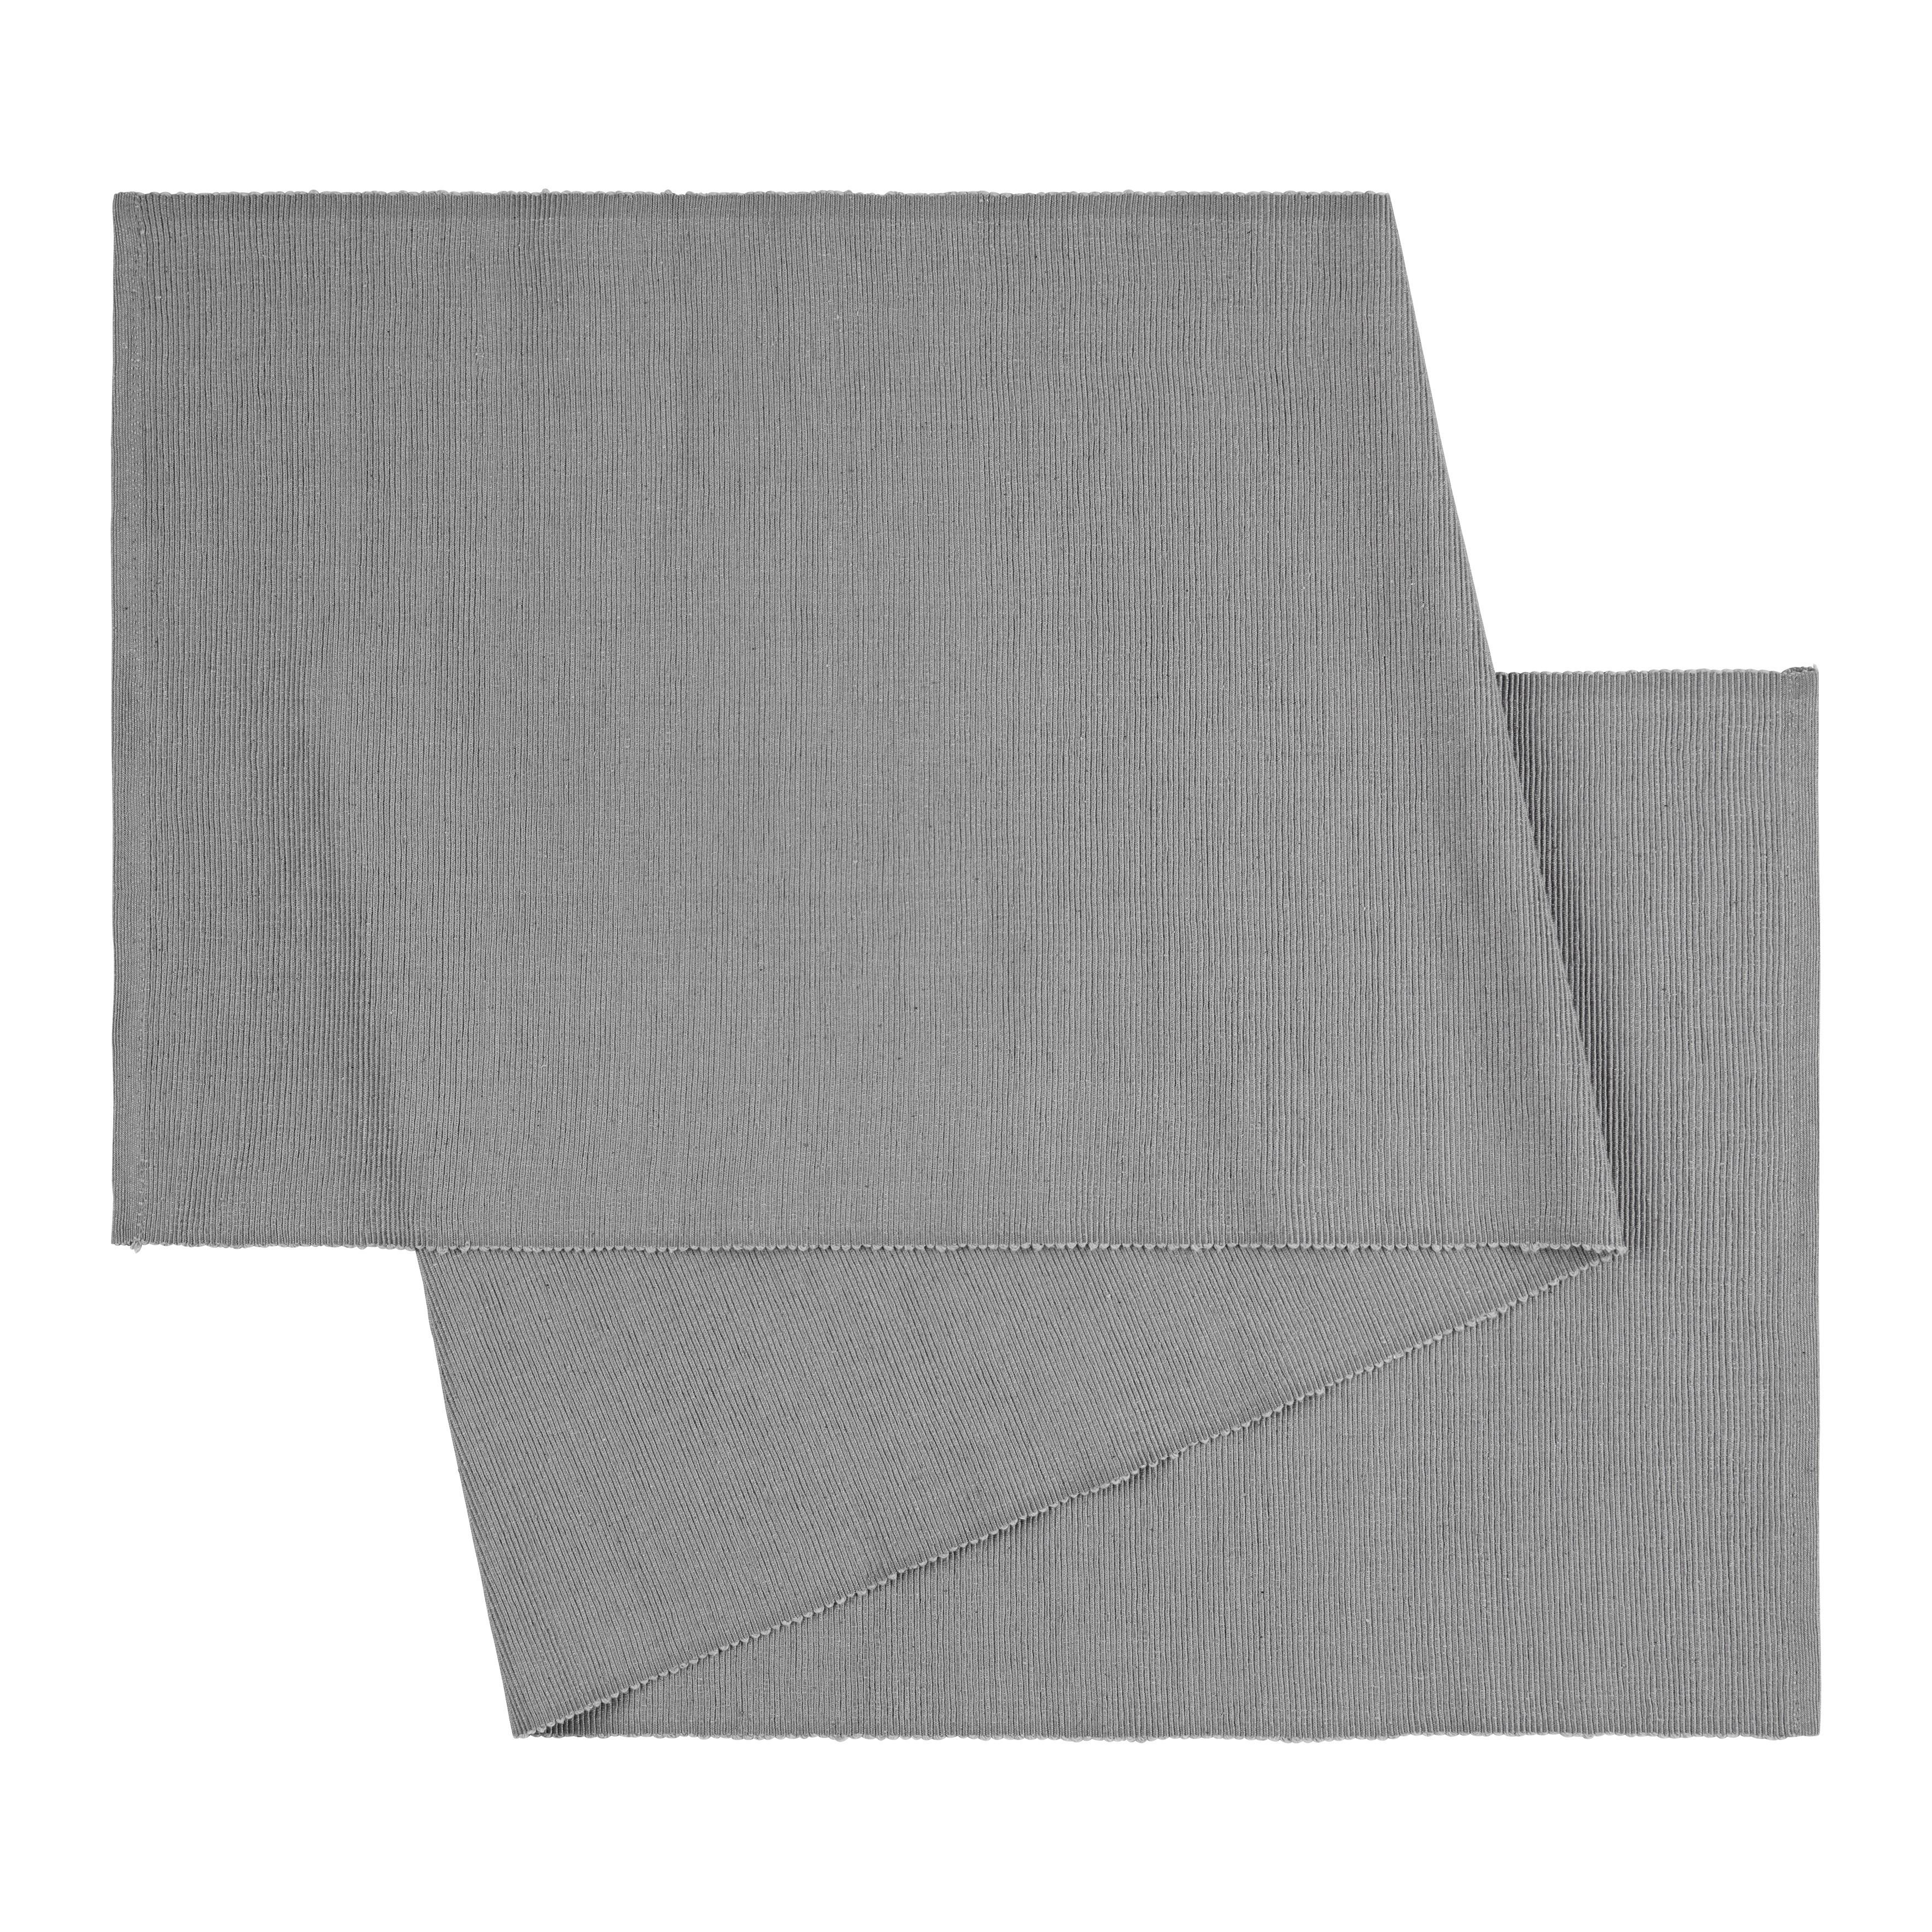 Nadprt Maren - svetlo siva, tekstil (40/150cm) - Modern Living